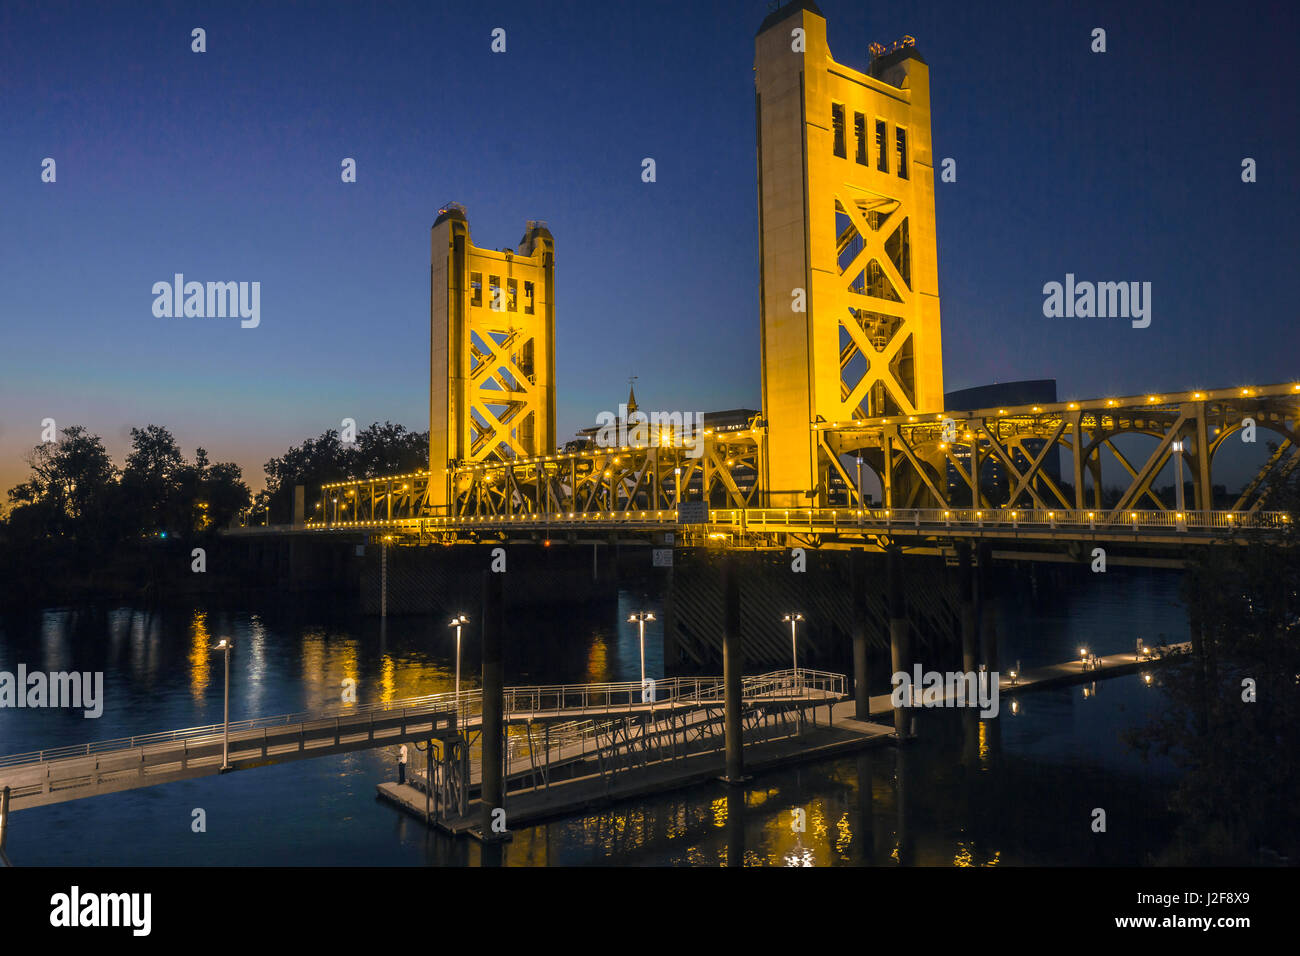 Tower Bridge, un pont qui enjambe la rivière Sacramento, dans la capitale de la Californie est un monument photogénique. Banque D'Images